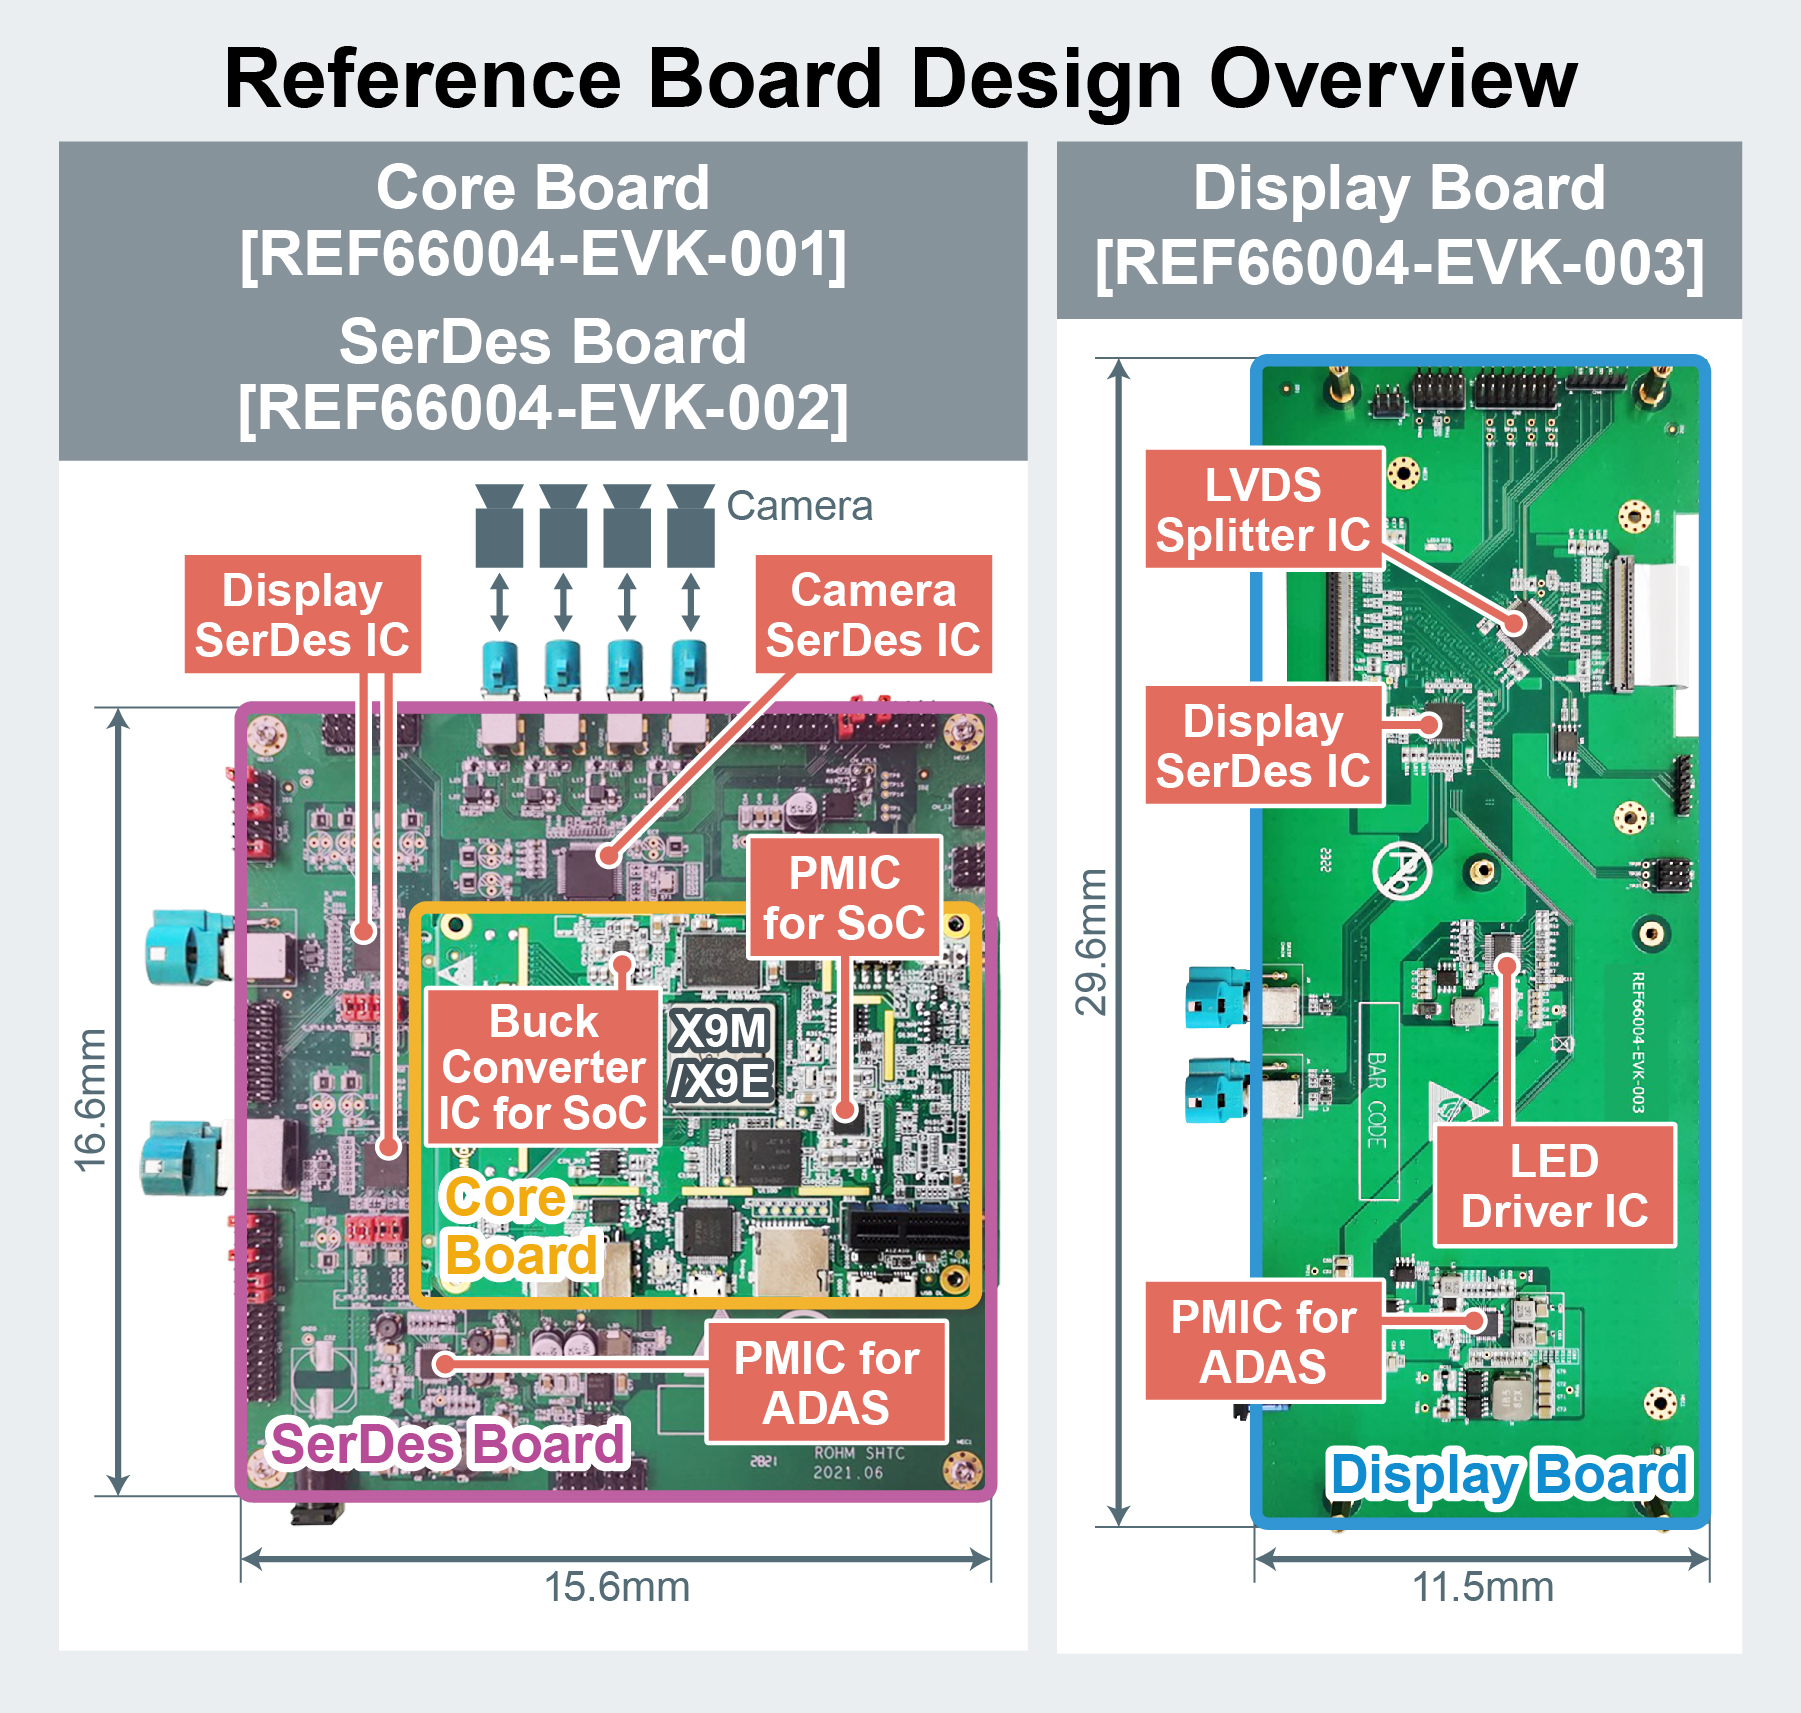 Smart Cockpit Reference Board - Design Overview